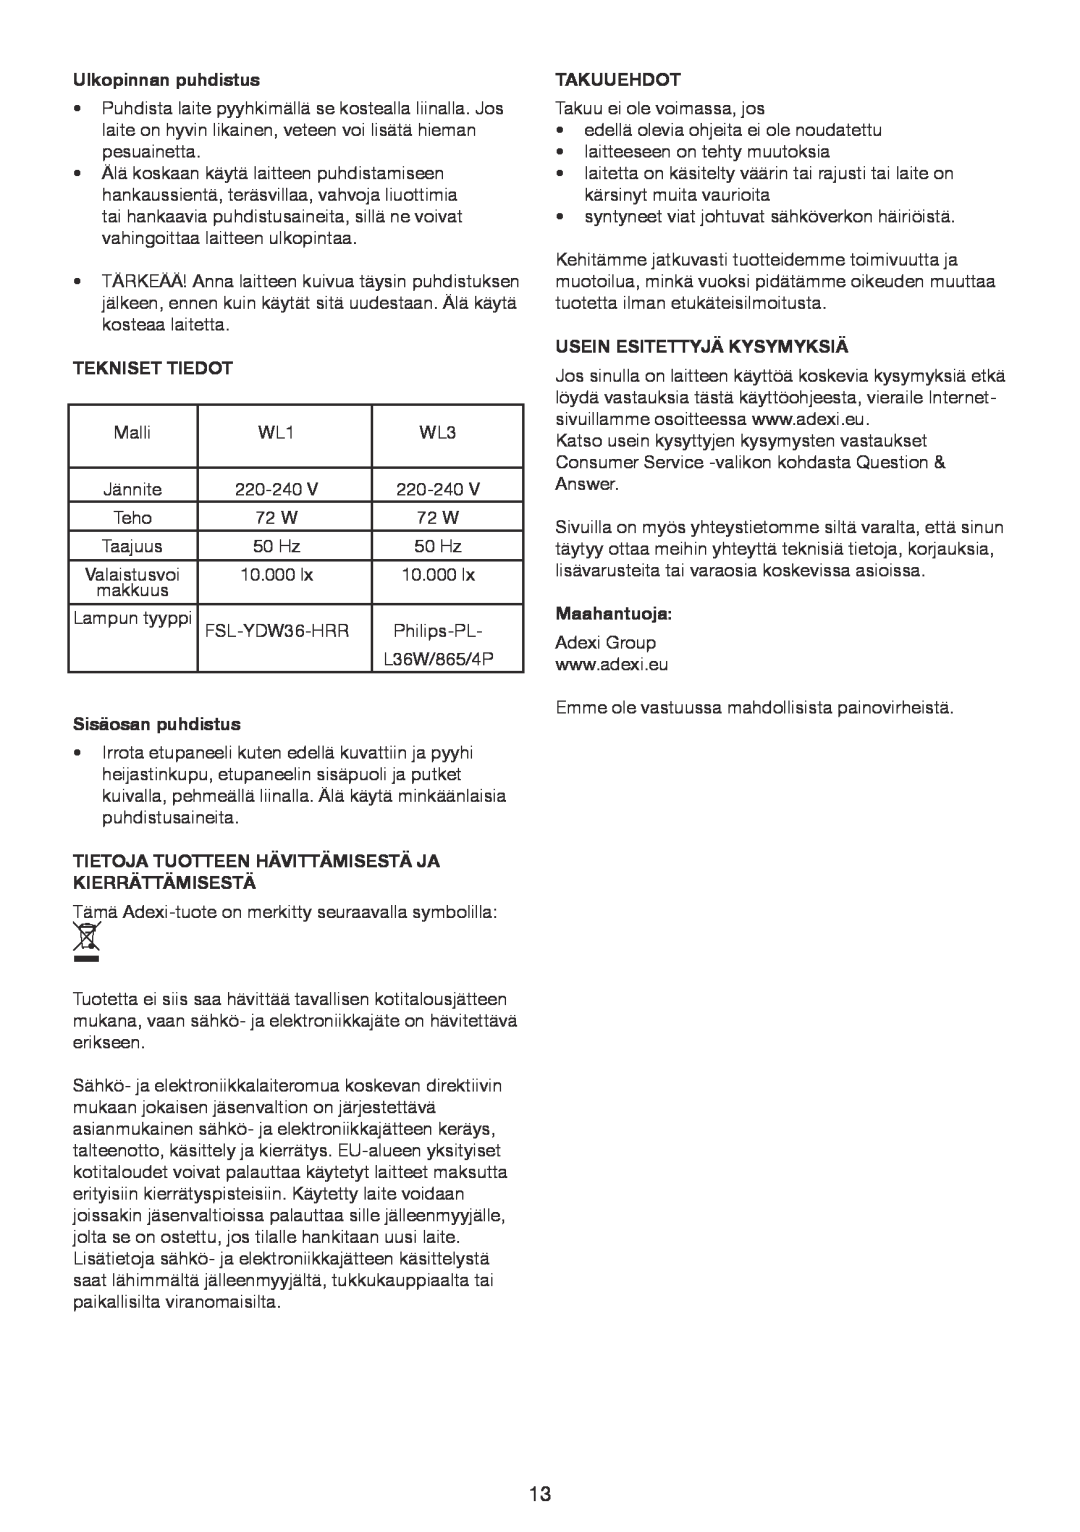 Melissa 637-006 manual Ulkopinnan puhdistus, Tekniset Tiedot, Sisäosan puhdistus, Takuuehdot, Usein Esitettyjä Kysymyksiä 